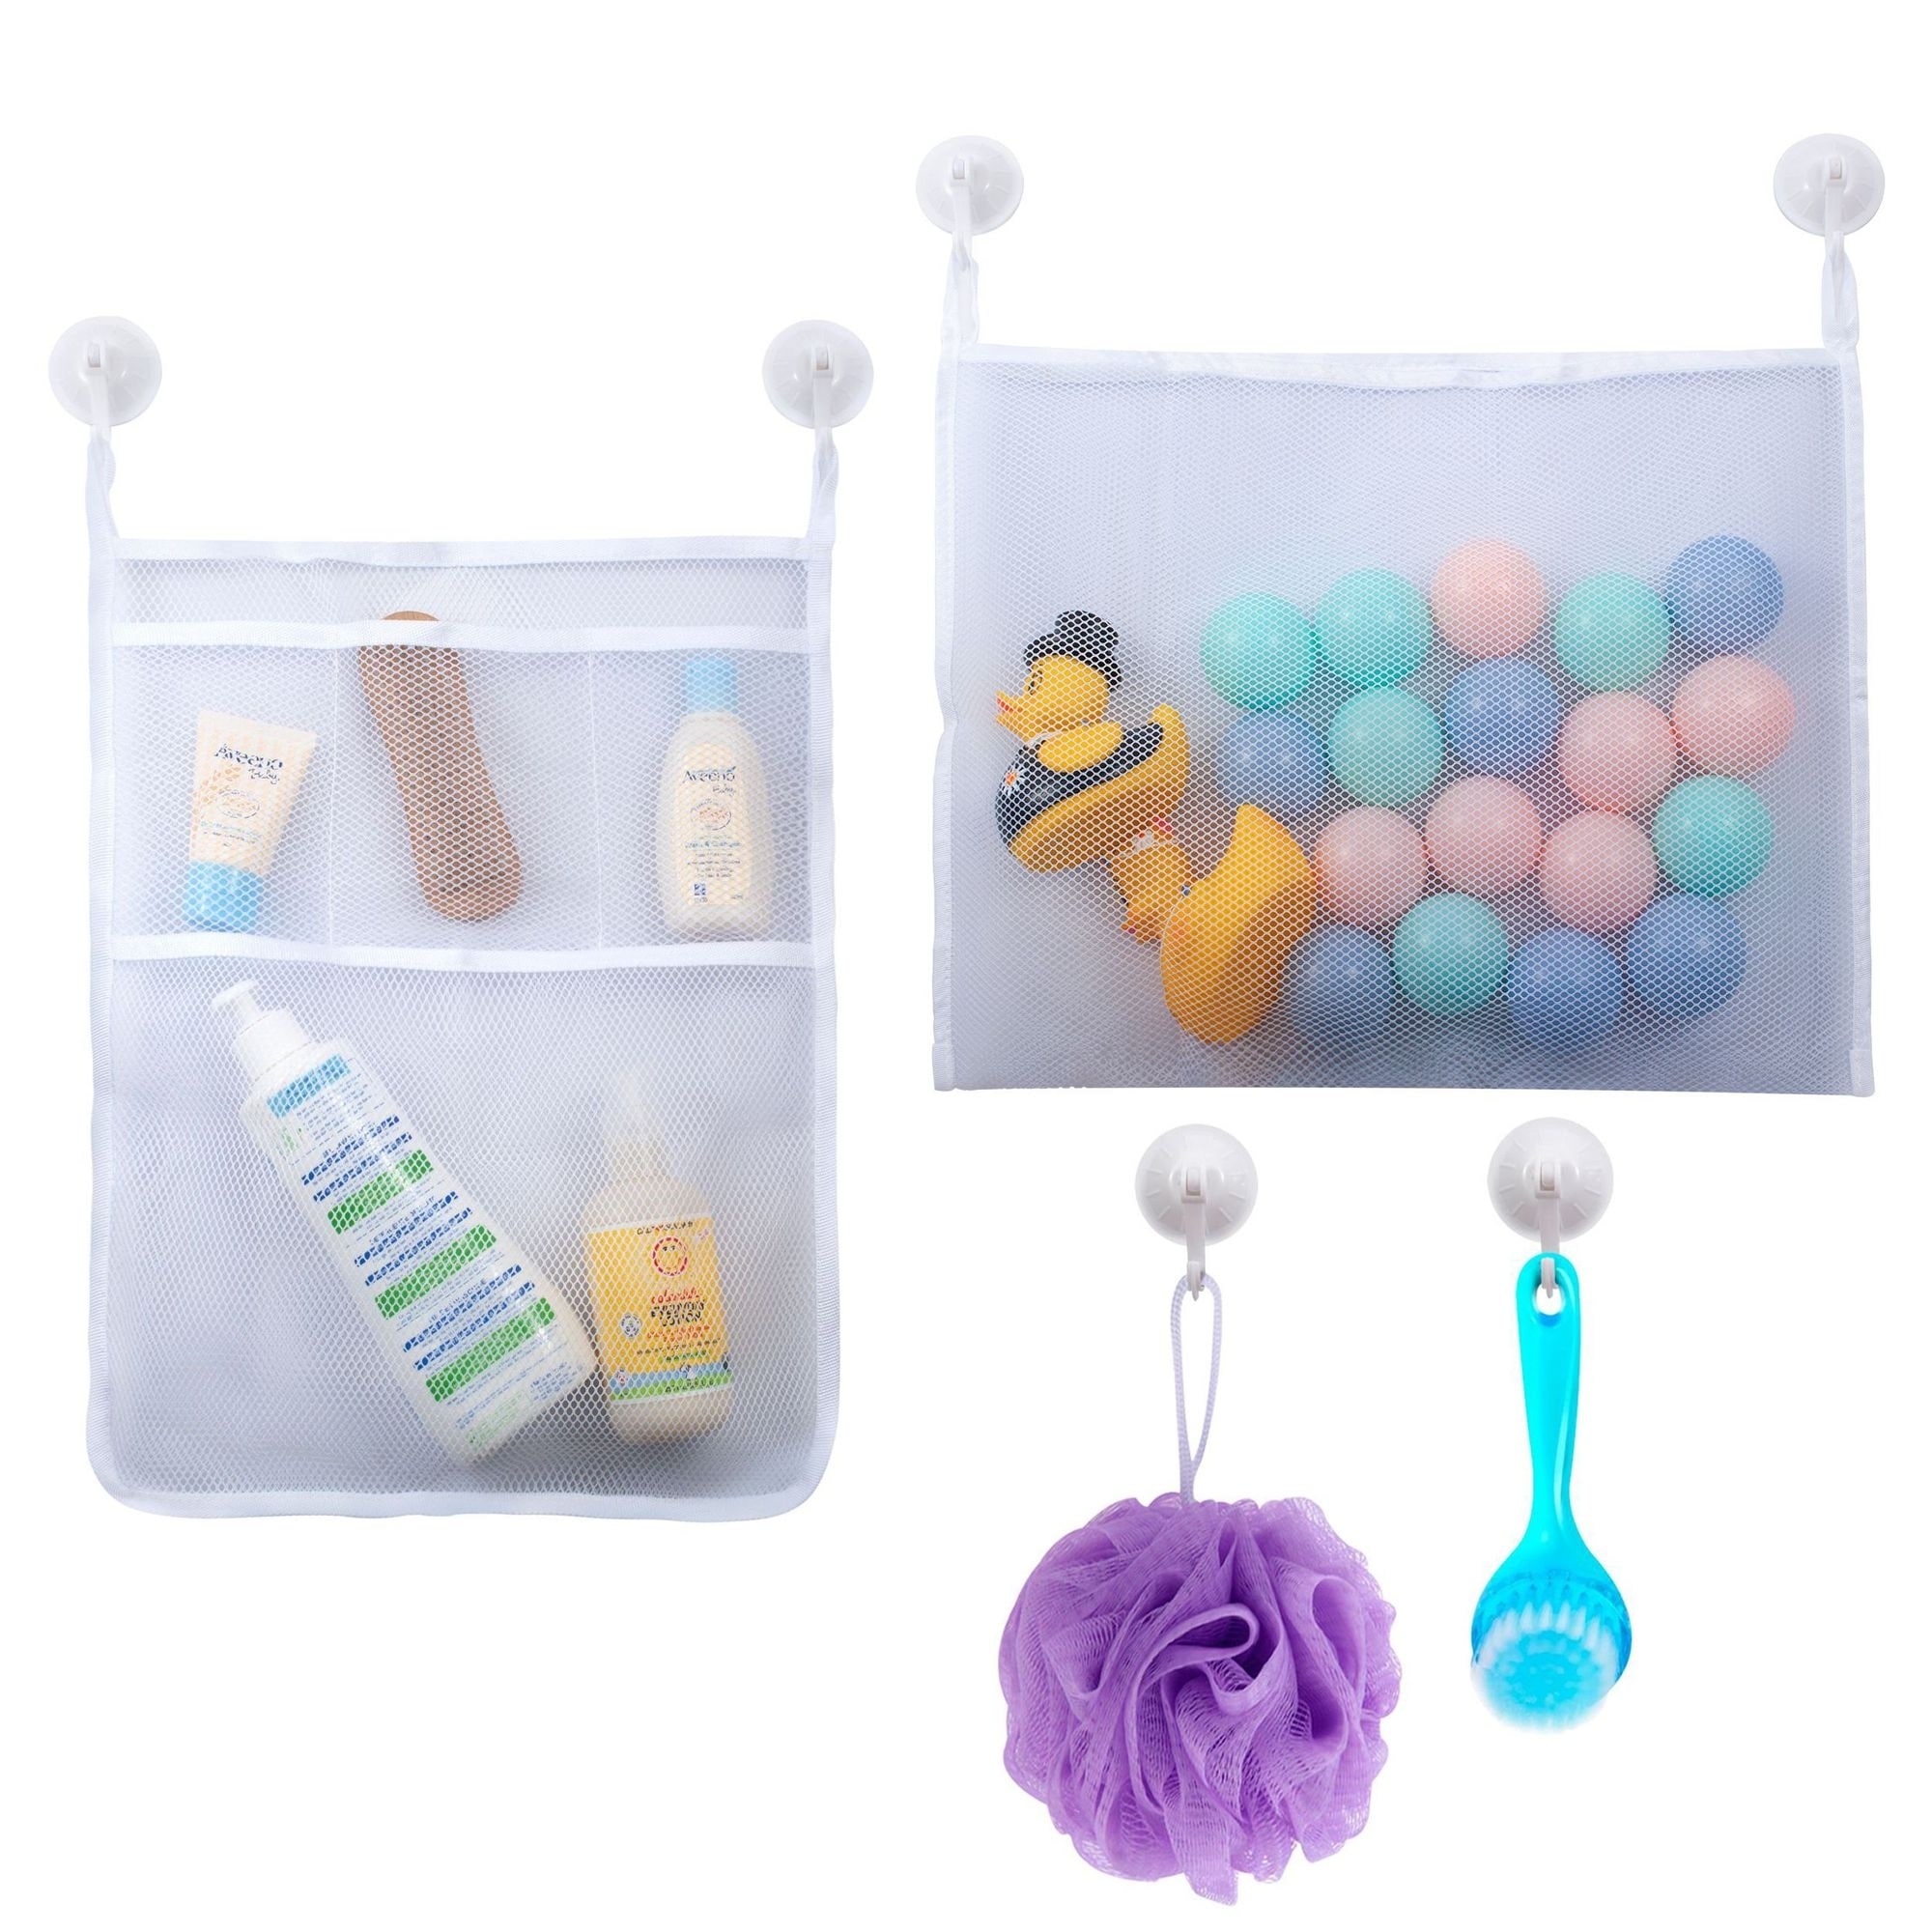 mesh bath toy organizer